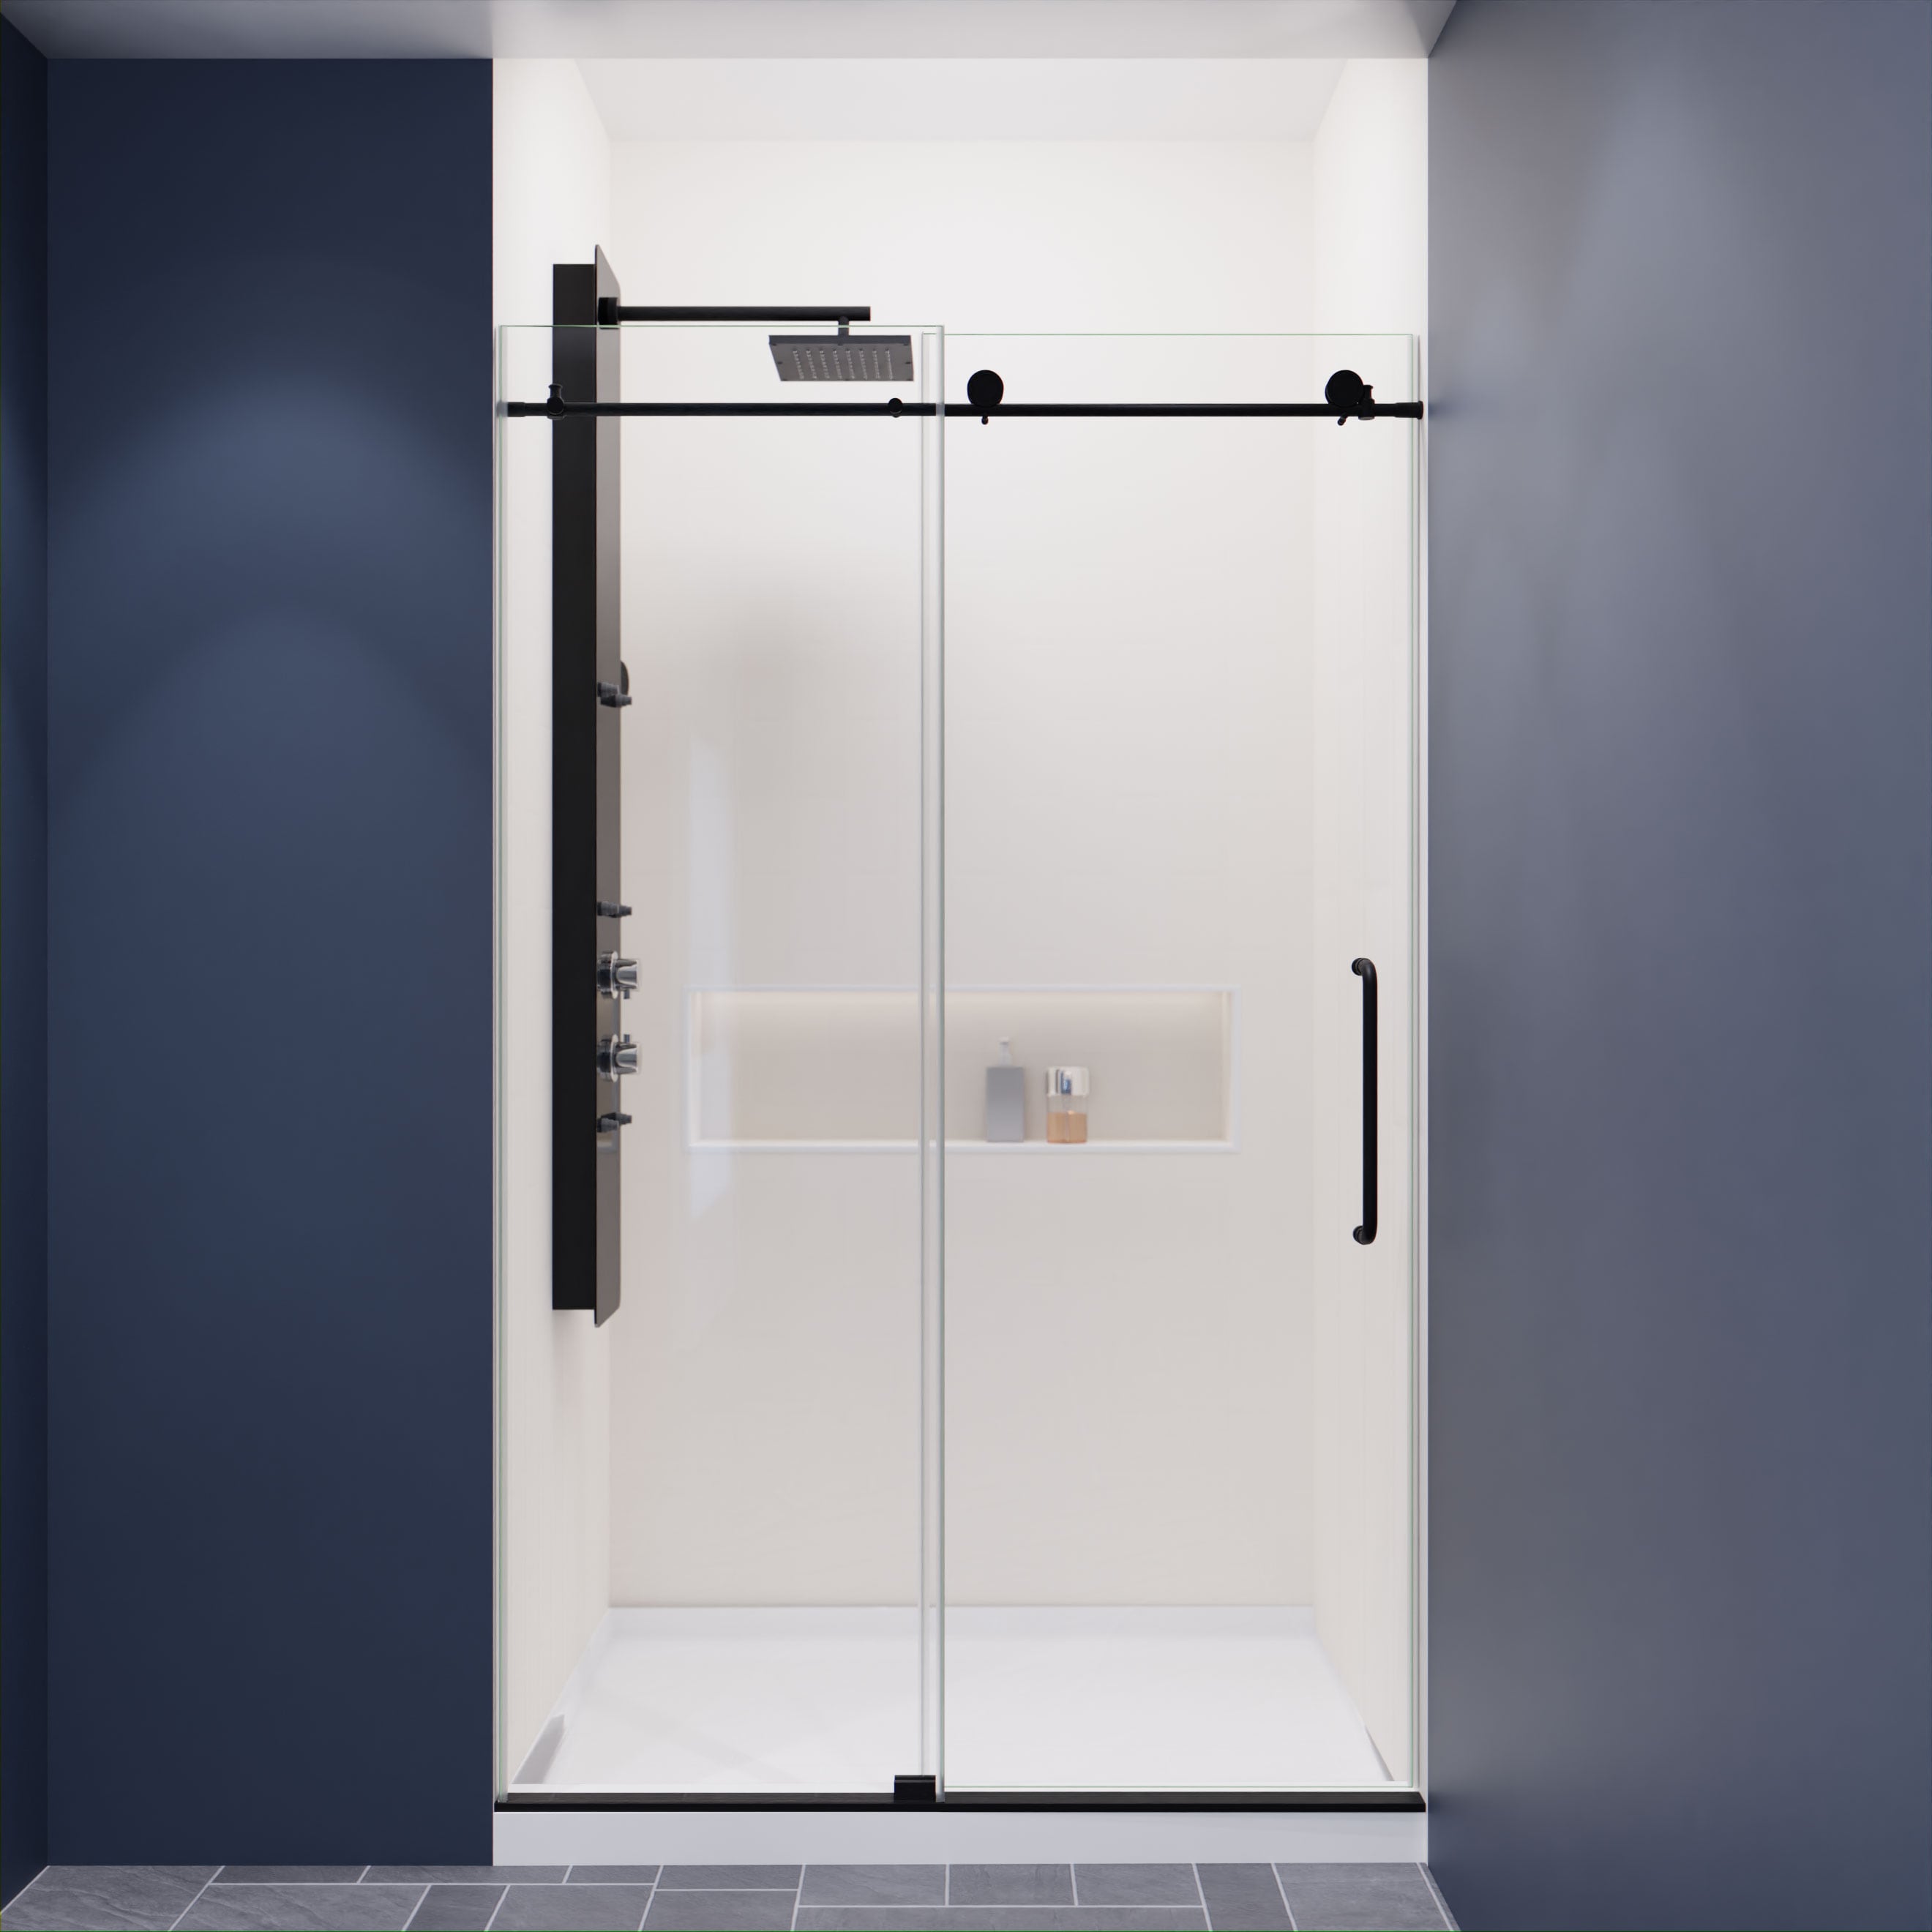 ANZZI 76 x 48 inch frameless shower door in brushed nickel  rhodes water  repellent glass shower door with seal strip handle parts